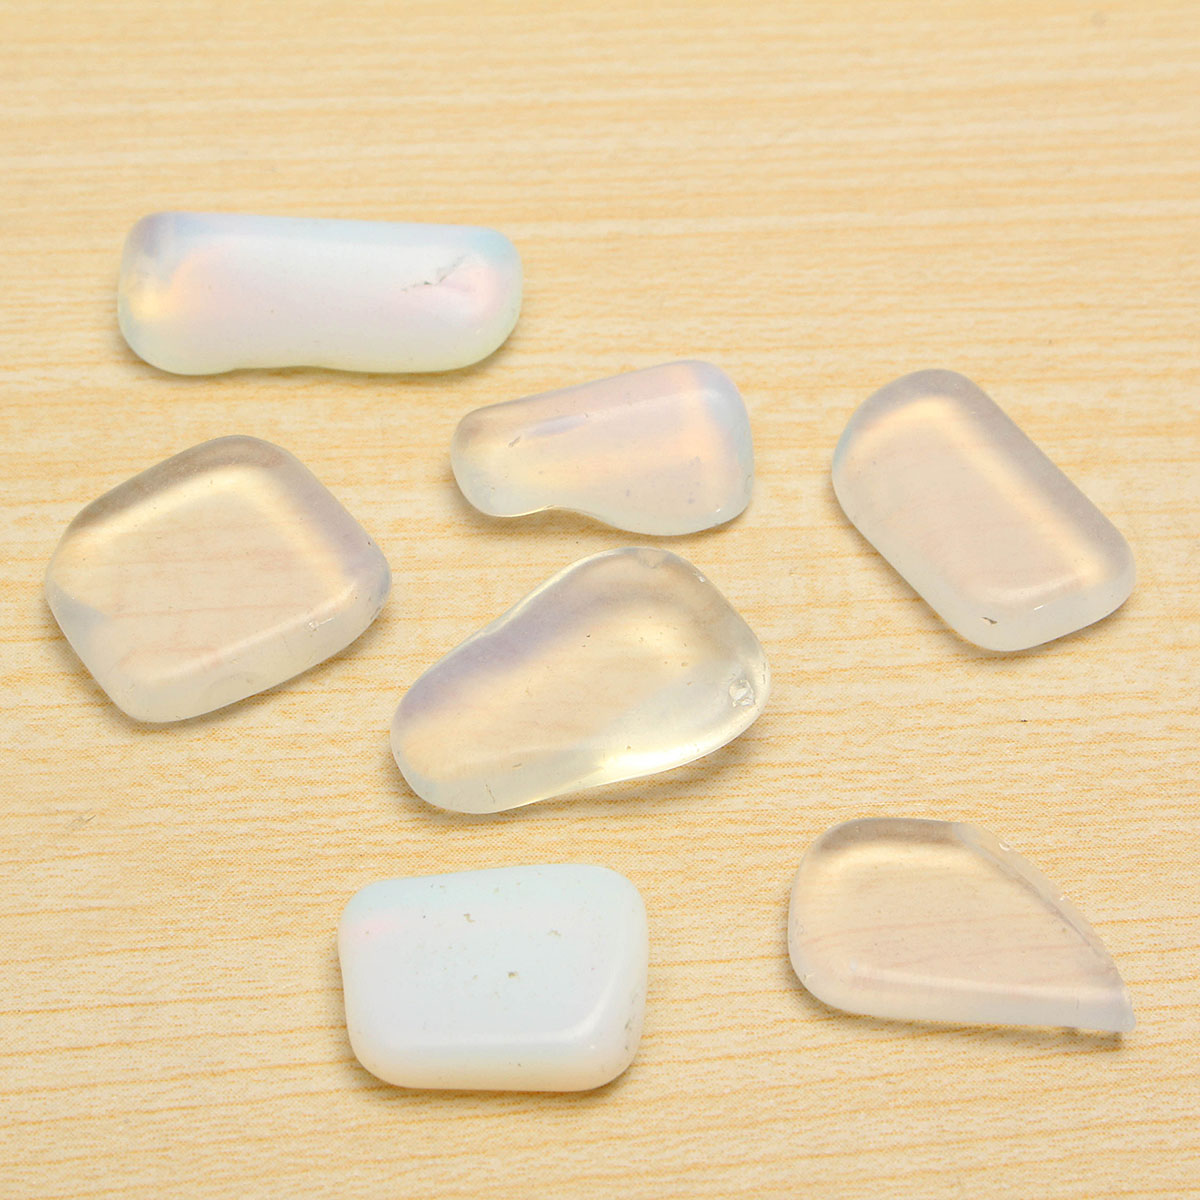 100g-9-12mm-Opal-Crystal-Particles-Stones-Healing-Quartz-Rock-Specimens-Accessories-1082851